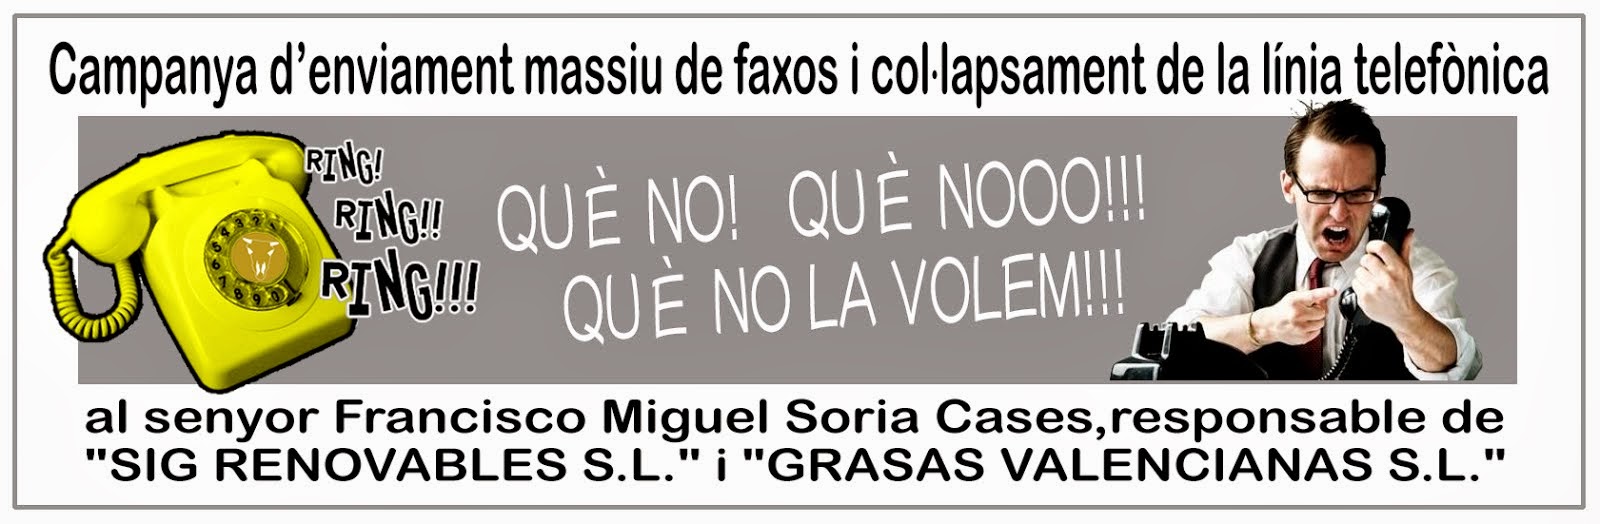 ENVIAMENT MASSIU DE FAXOS I COL·LAPSAMENT DE LA LÍNIA TELEFÒNICA